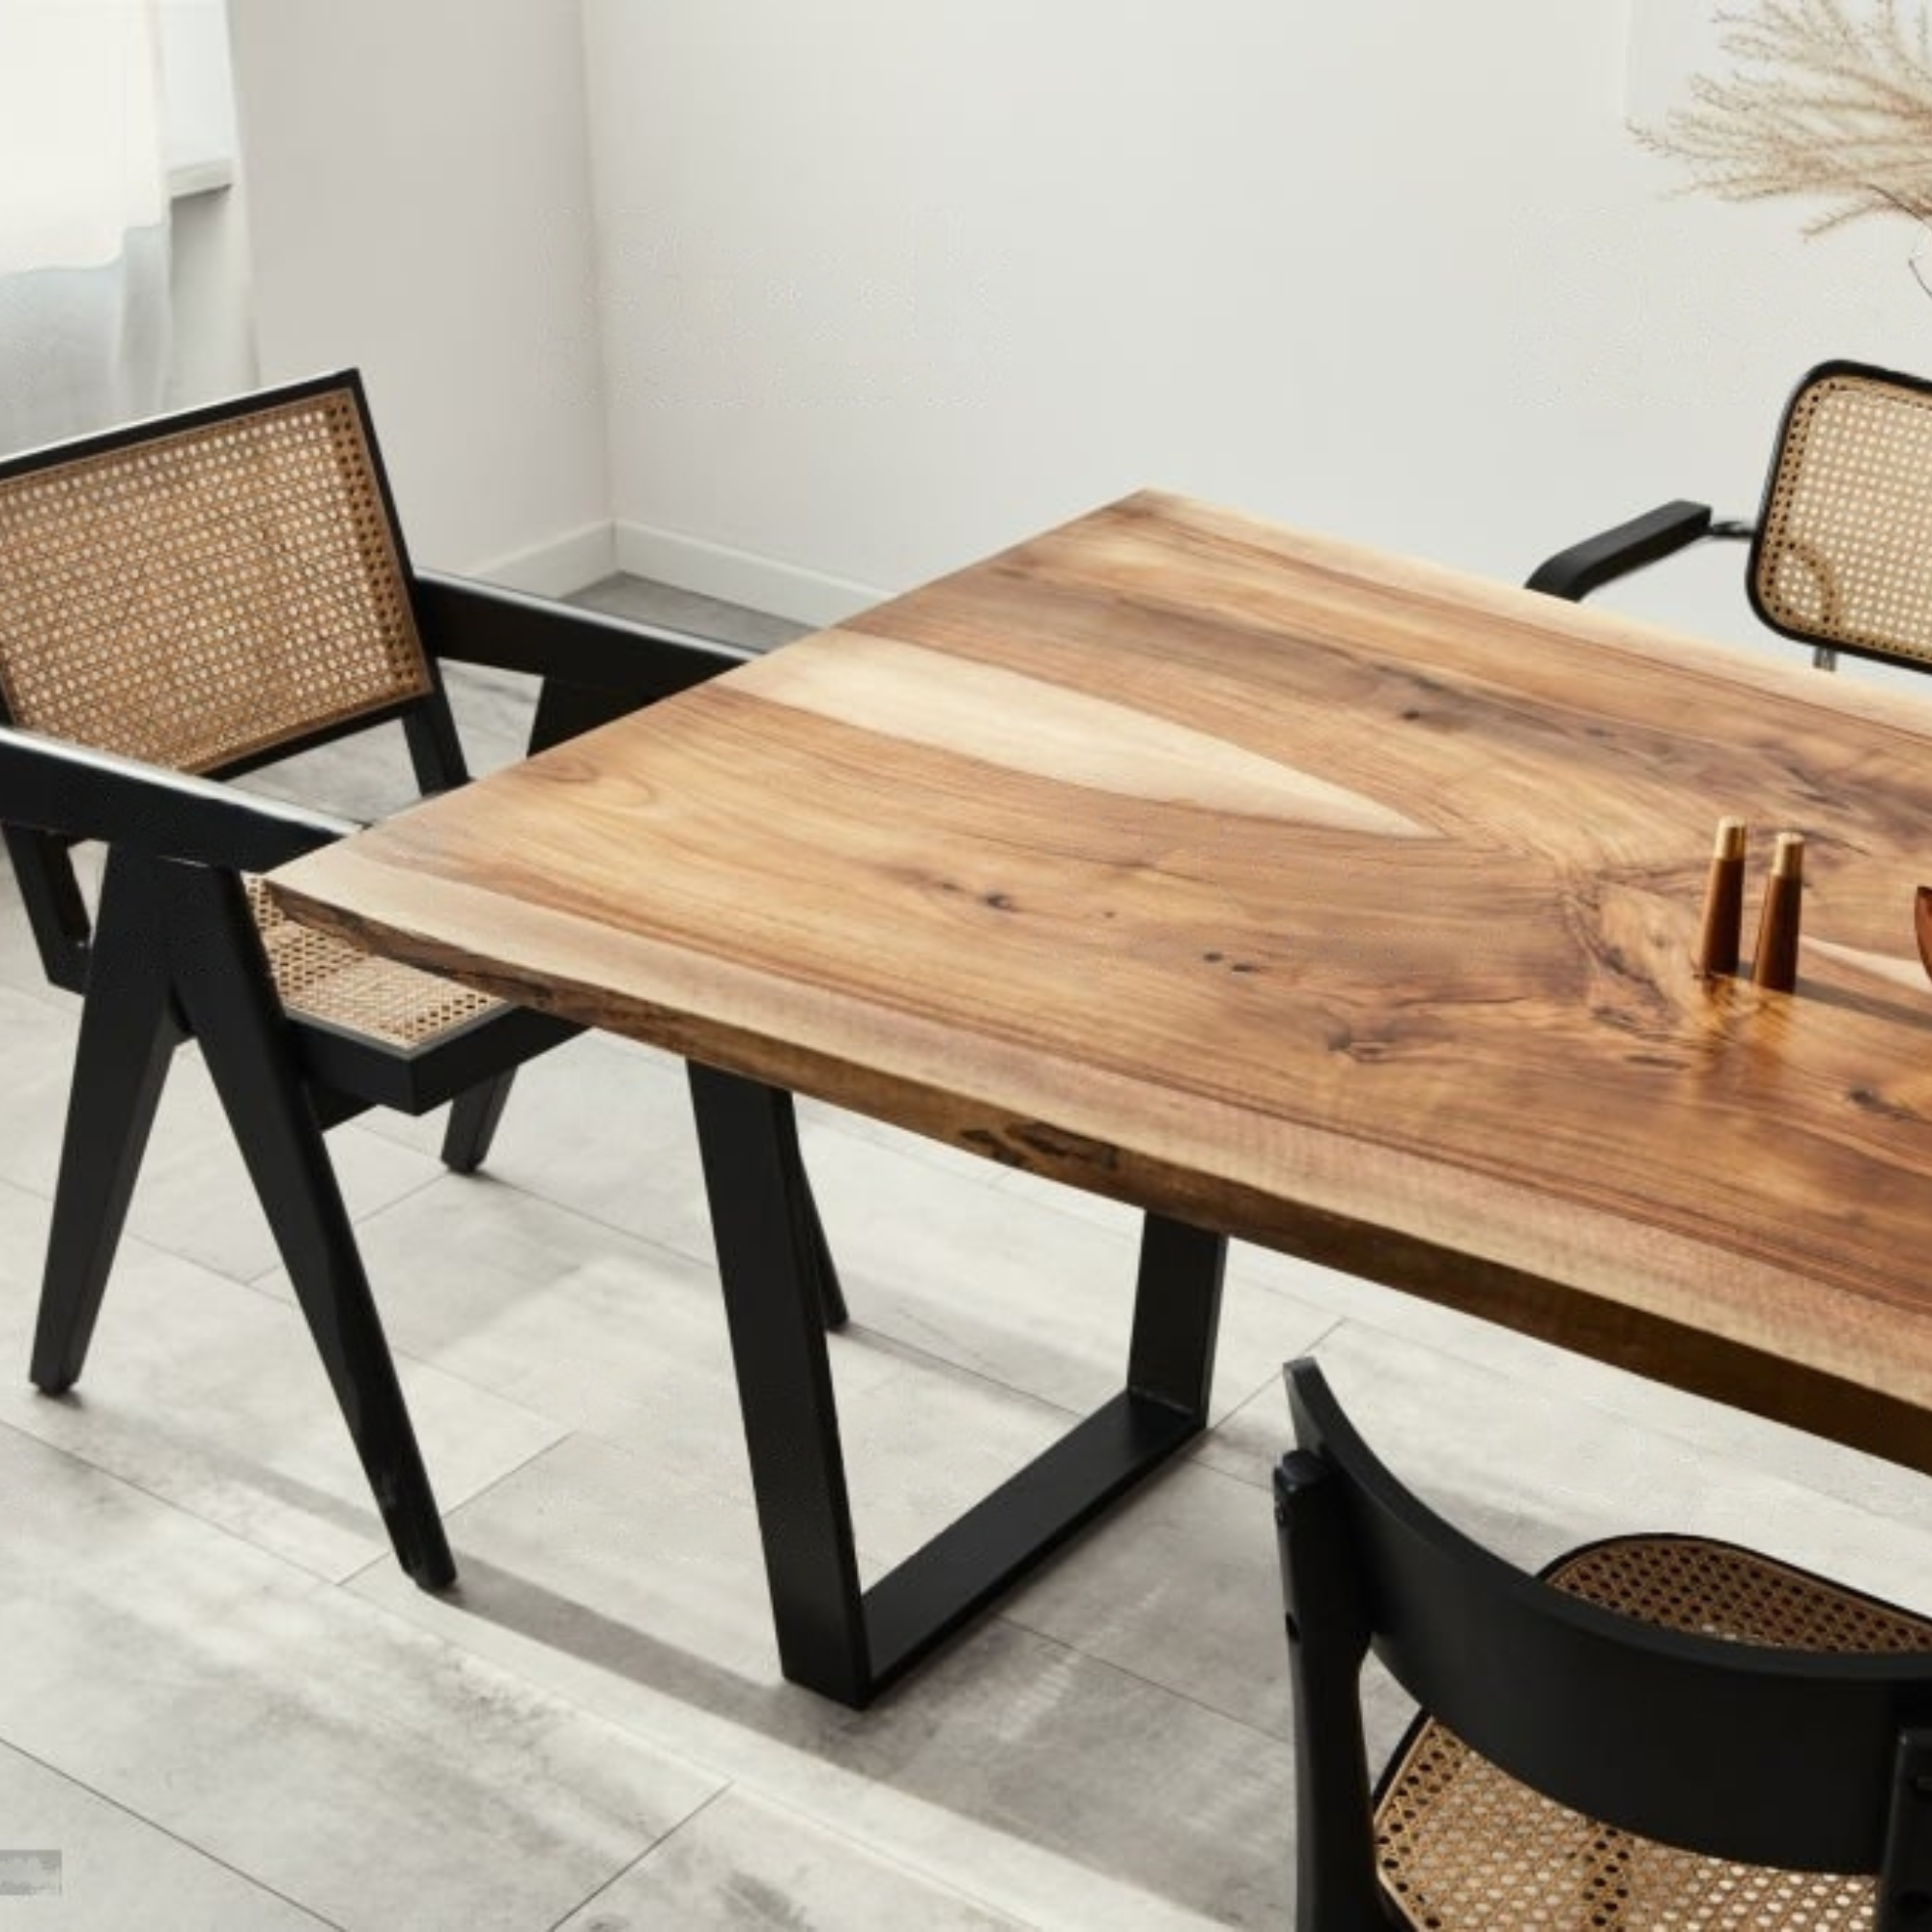 Table avec plateau en bois massif et pied métallique en acier